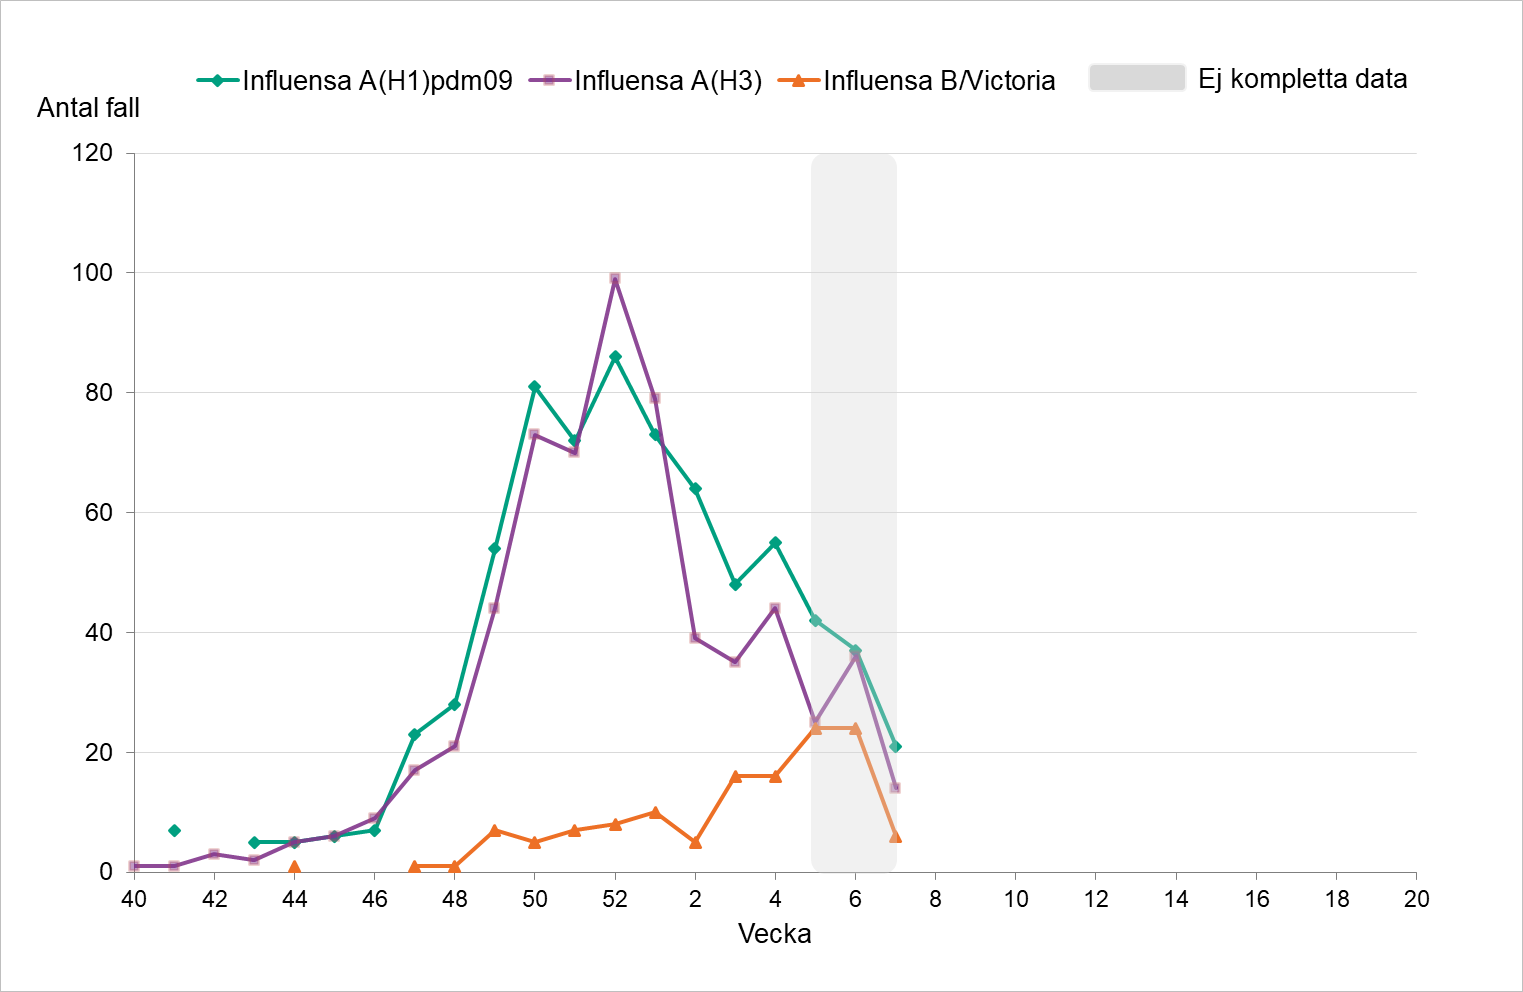 Fördelningen har varit relativt jämn vecka för vecka mellan A H1 och A H3. Under de senaste veckorna ses fler fall av B/Victoria. 